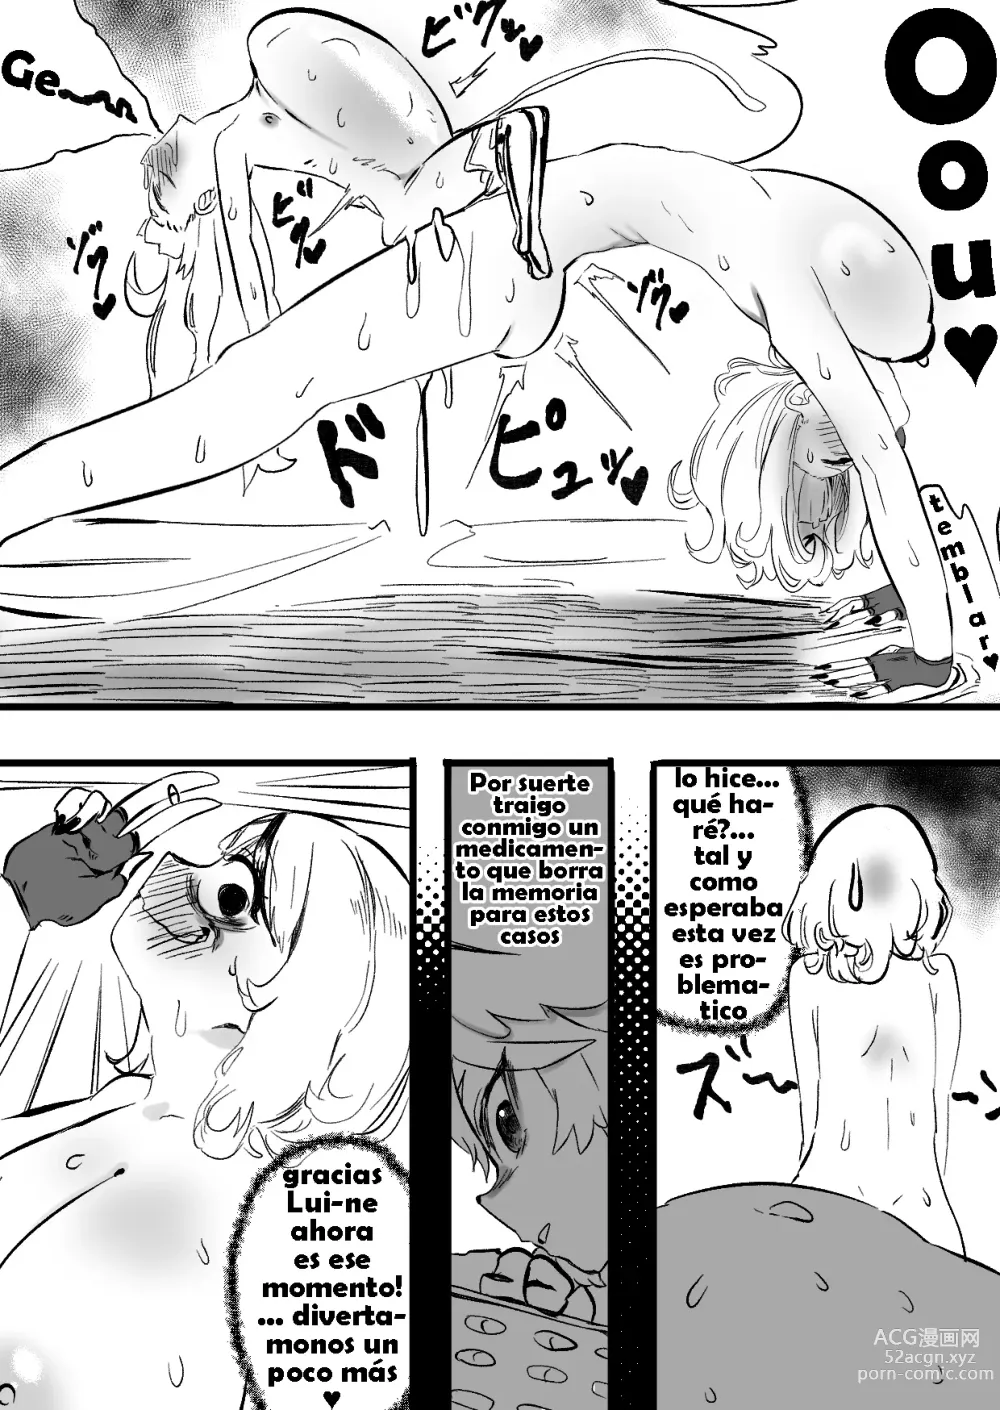 Page 24 of doujinshi KuroShio unde mirumiru fiiyu